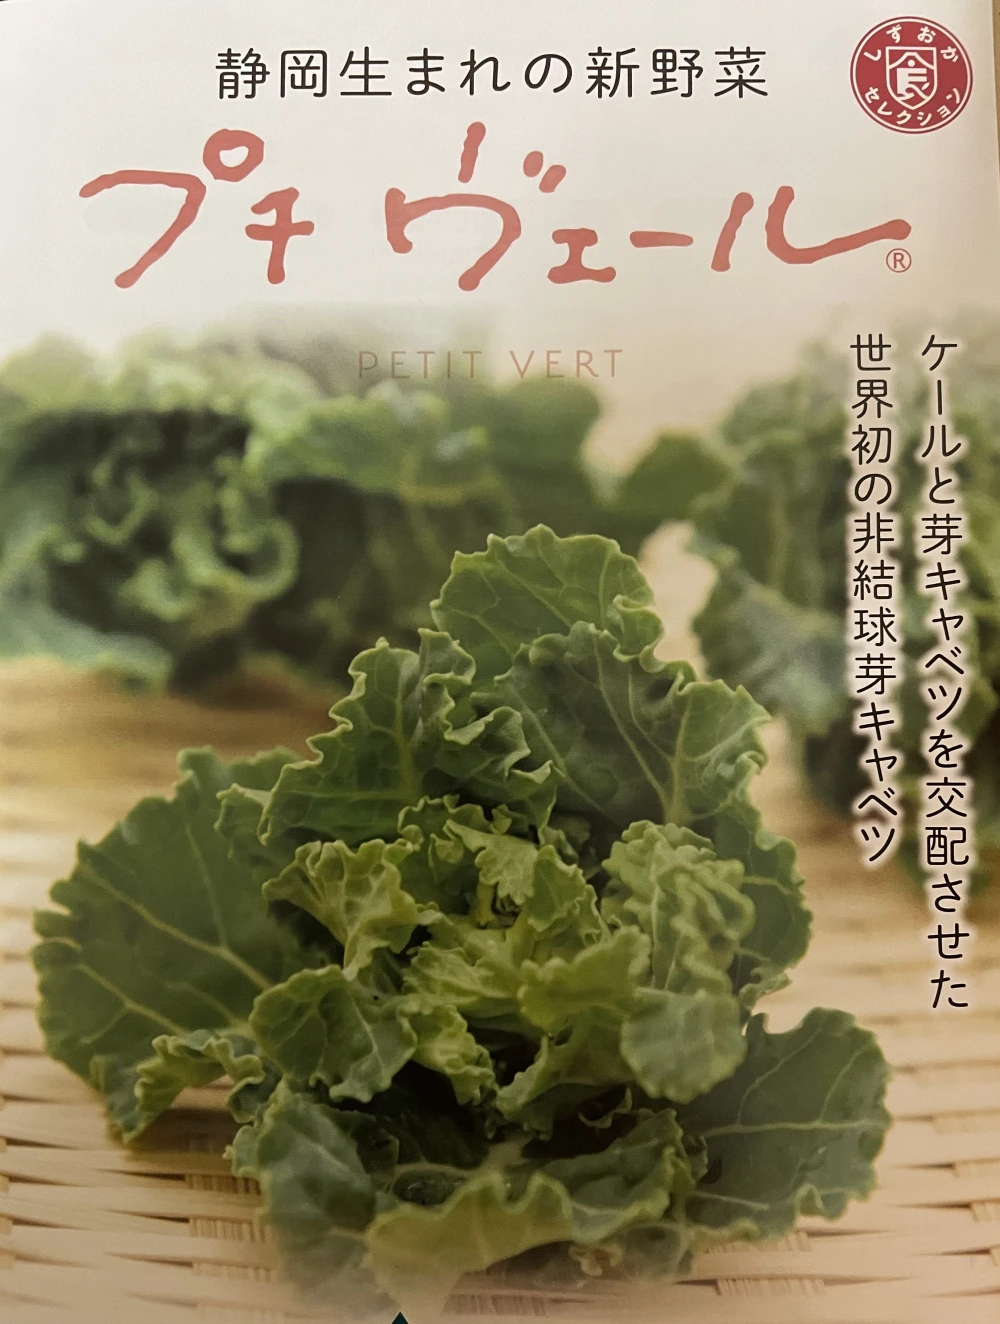 静岡生まれの新野菜プチヴェール